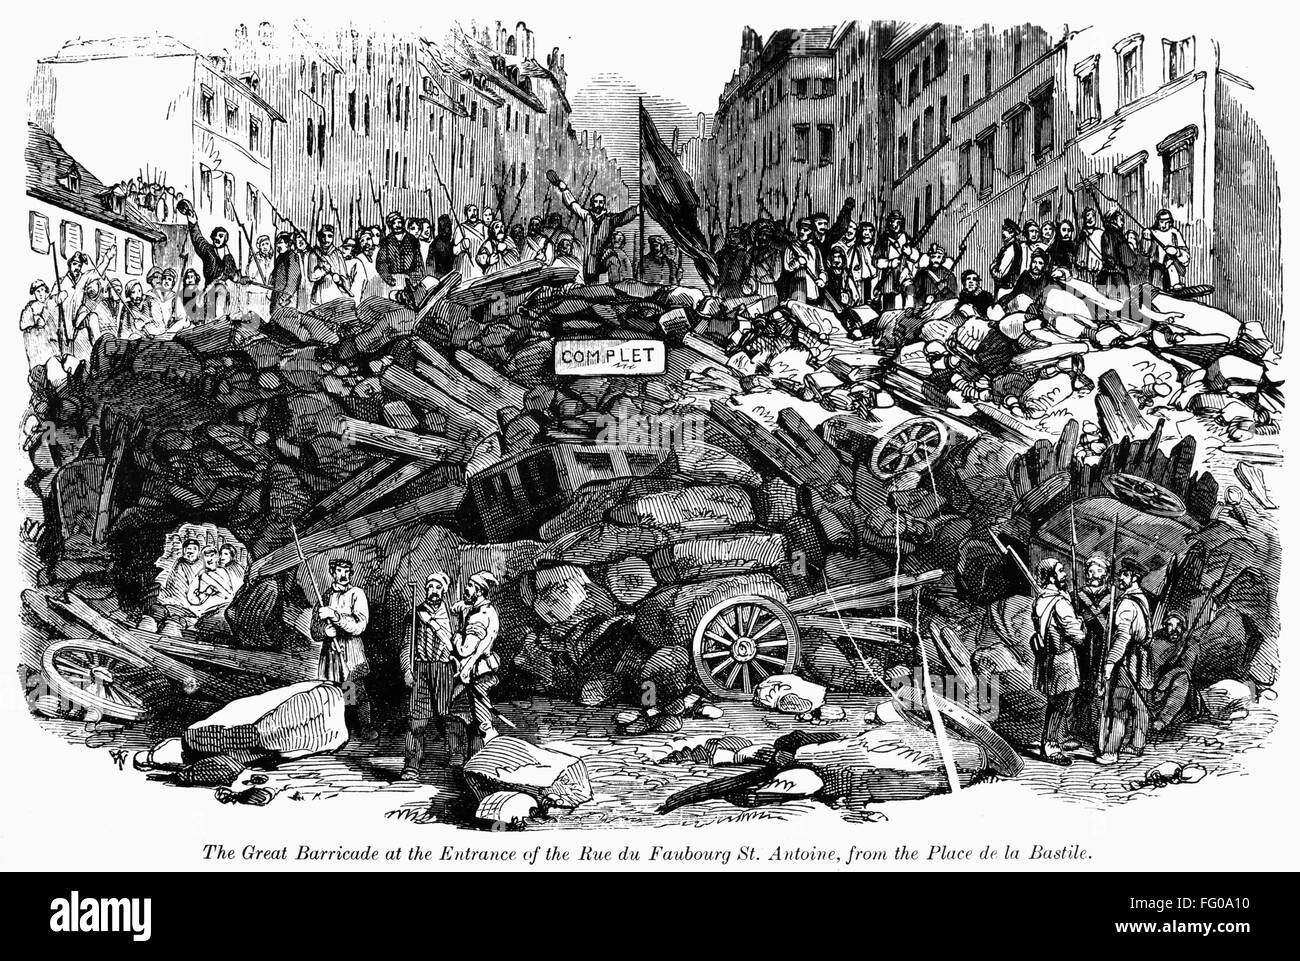 Революции в европе в 19 в. Баррикады во Франции 1848. Баррикады революции 1848 года во Франции. Баррикада 1848 года Париж. Революция в Германии 1848-1849.